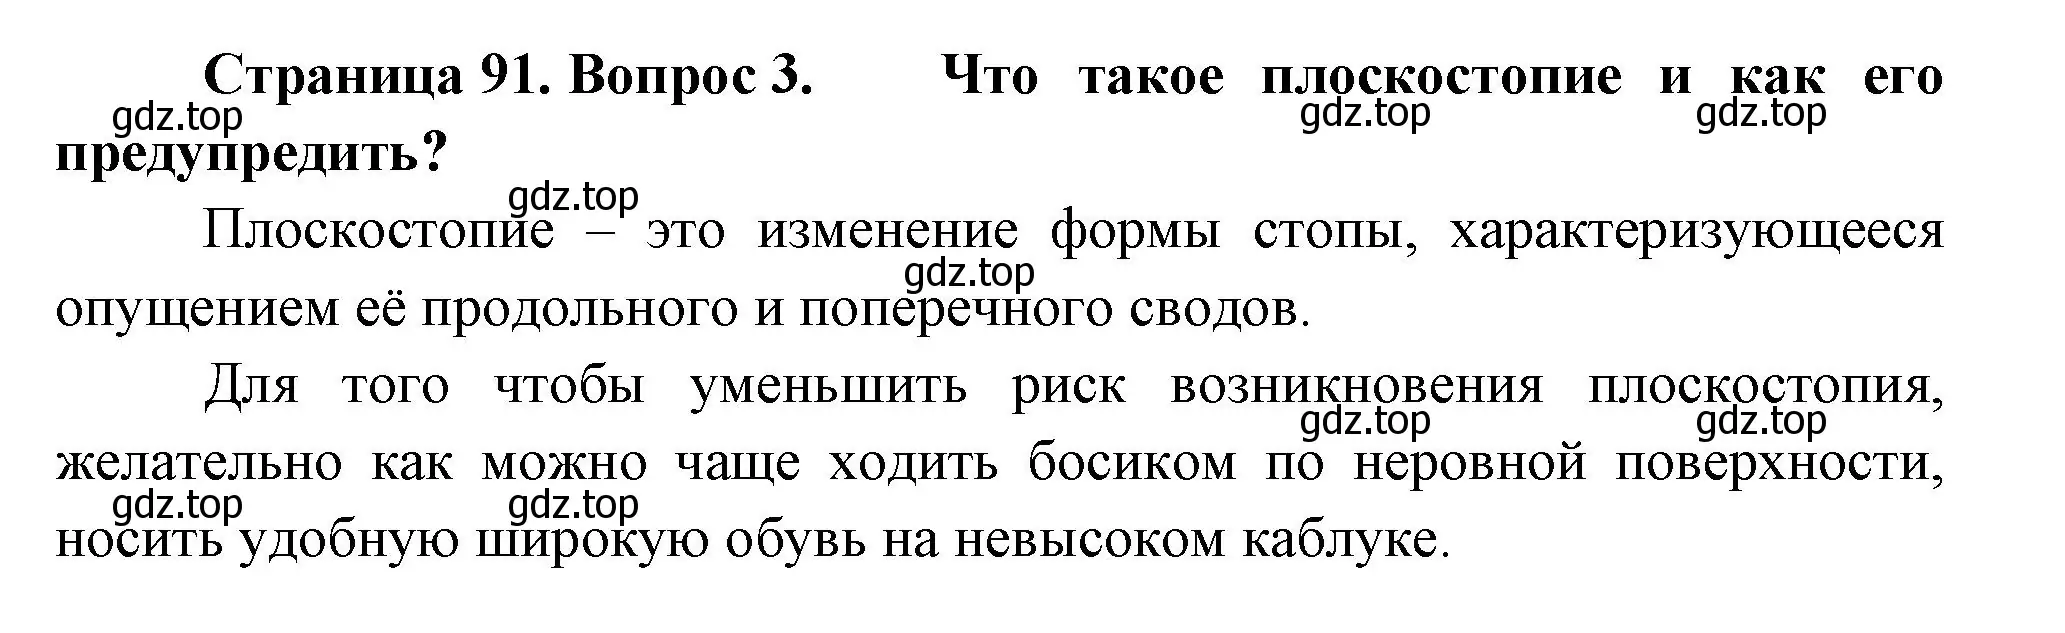 Решение номер 3 (страница 91) гдз по биологии 9 класс Пасечник, Каменский, учебник